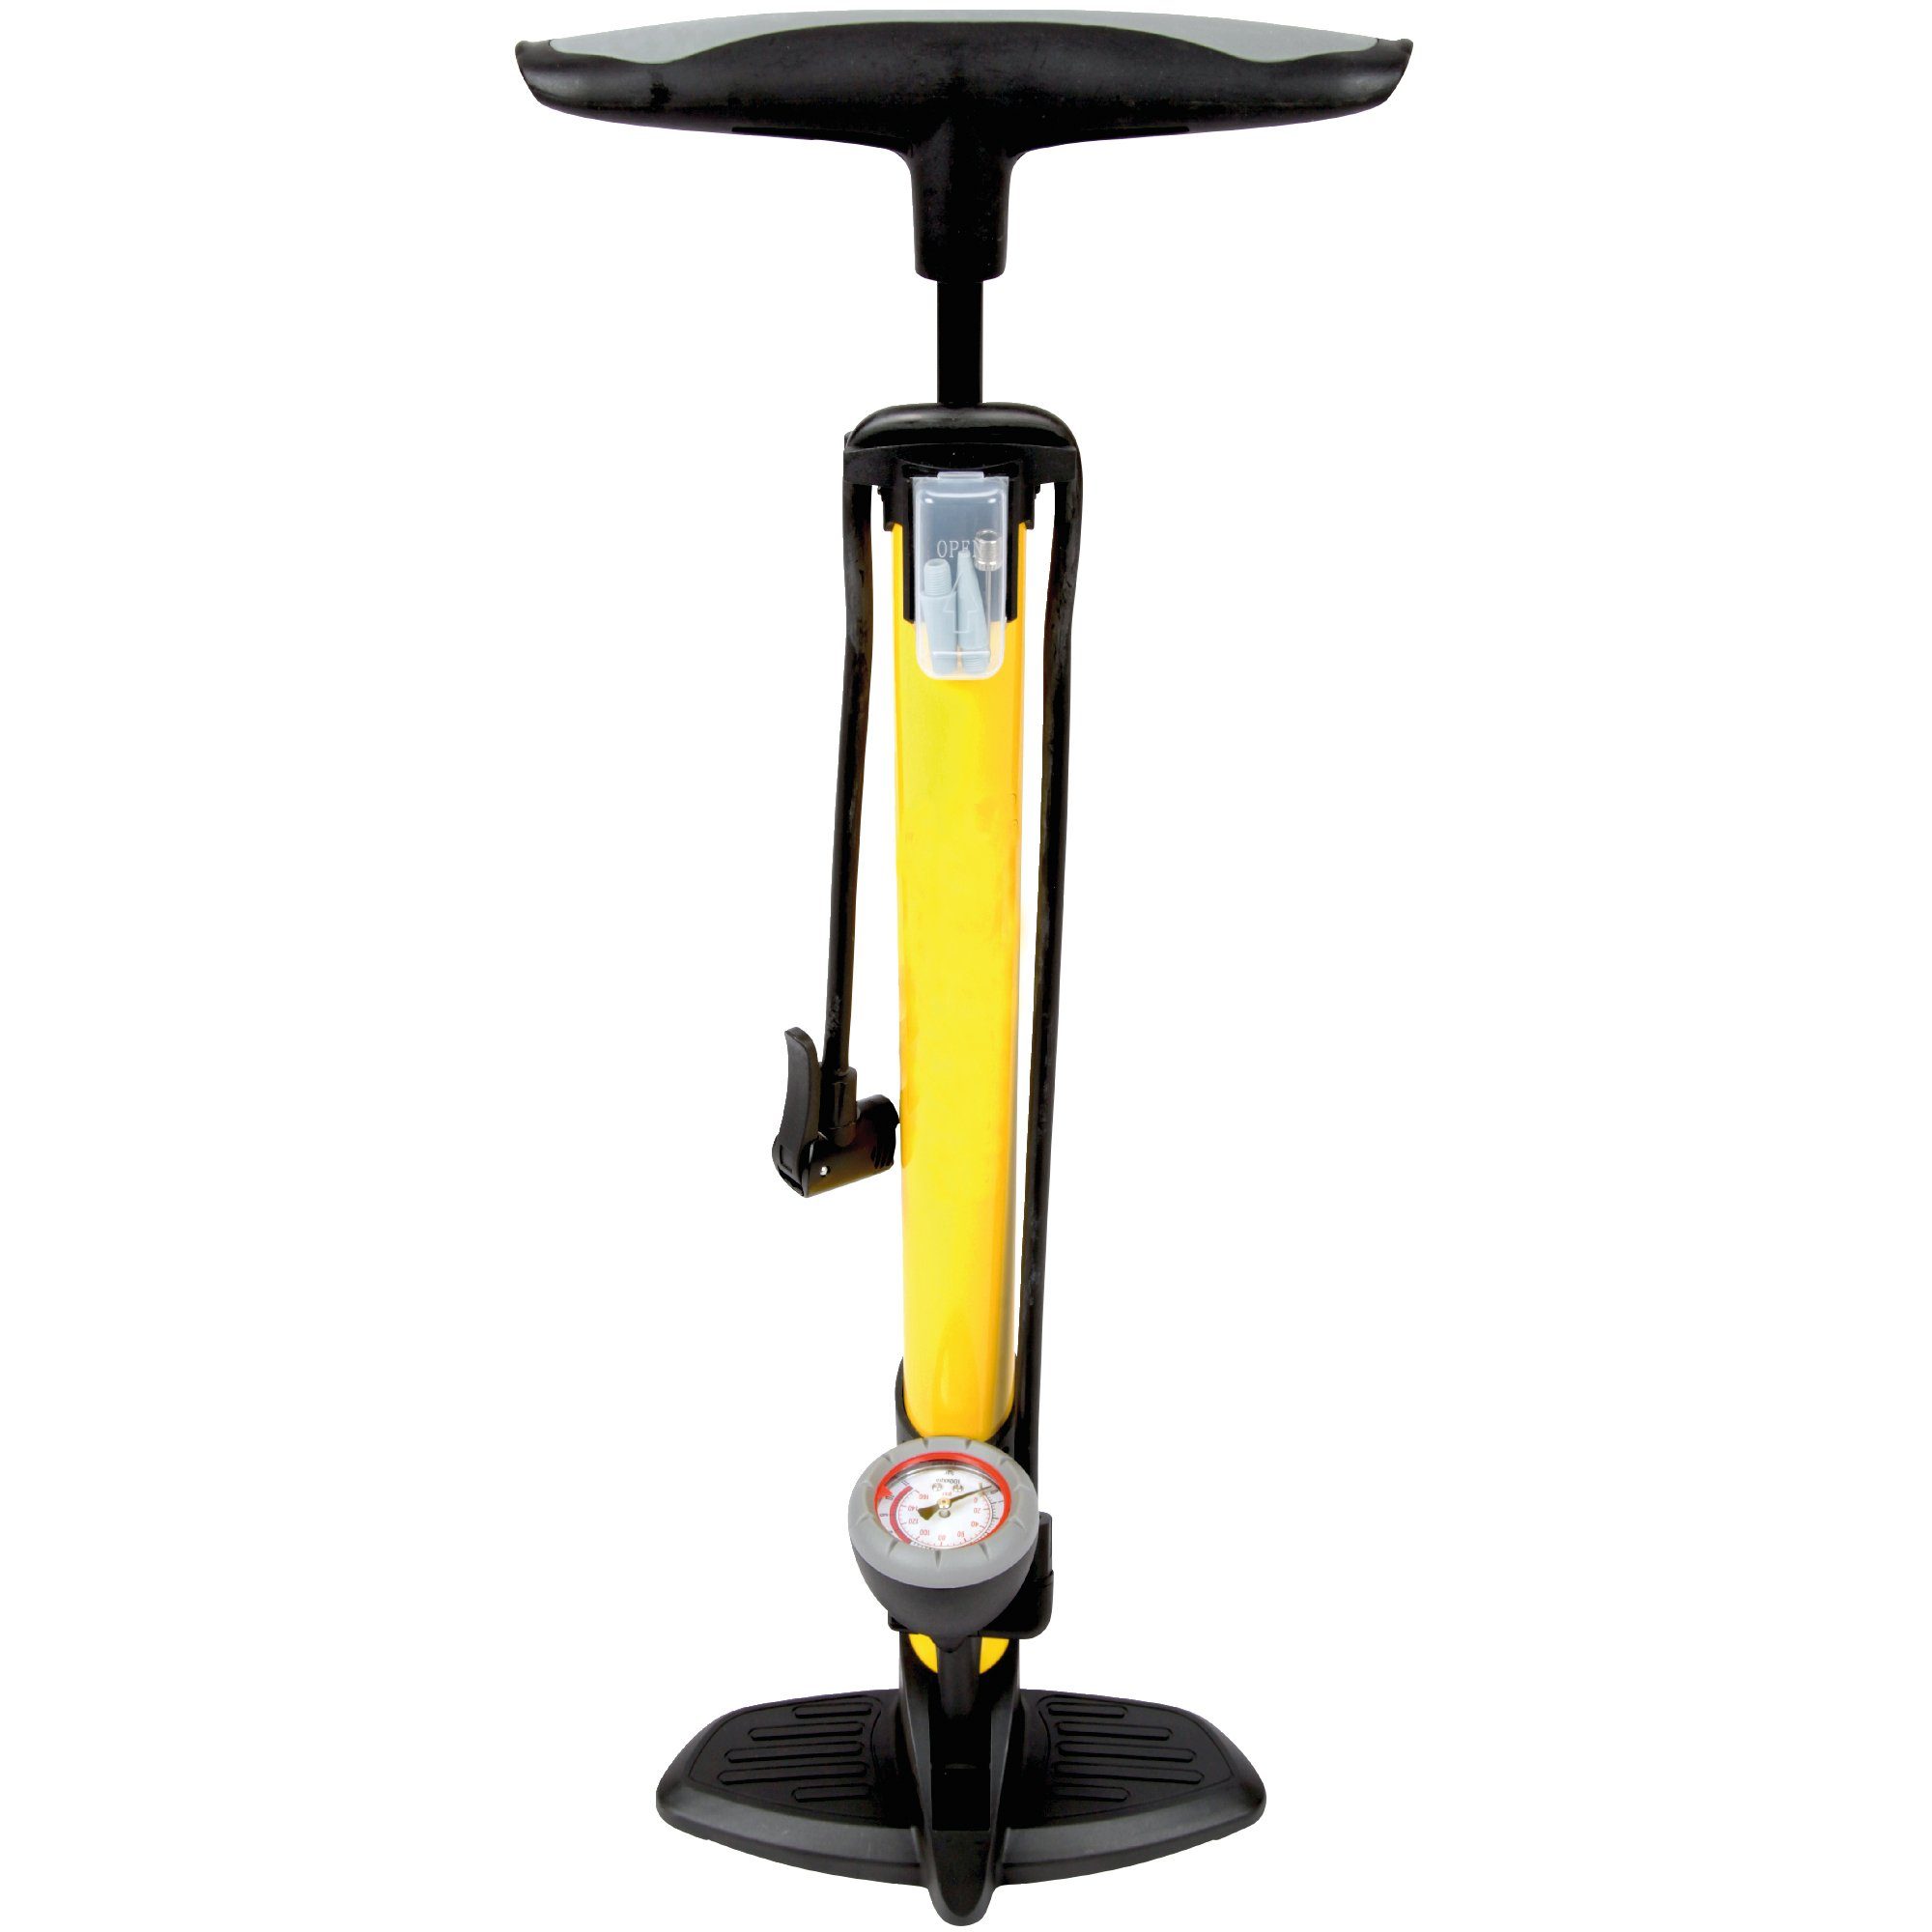 Bestlivings Standpumpe LP-05228 (inkl. Ventiladapter), Standpumpe mit  Manometer für alle Ventile (11 bar / 160 psi), Fahrrad Reifenpumpe mit Dual  Kopf und Ventiladapter - auch für Bälle, Luftmatratzen